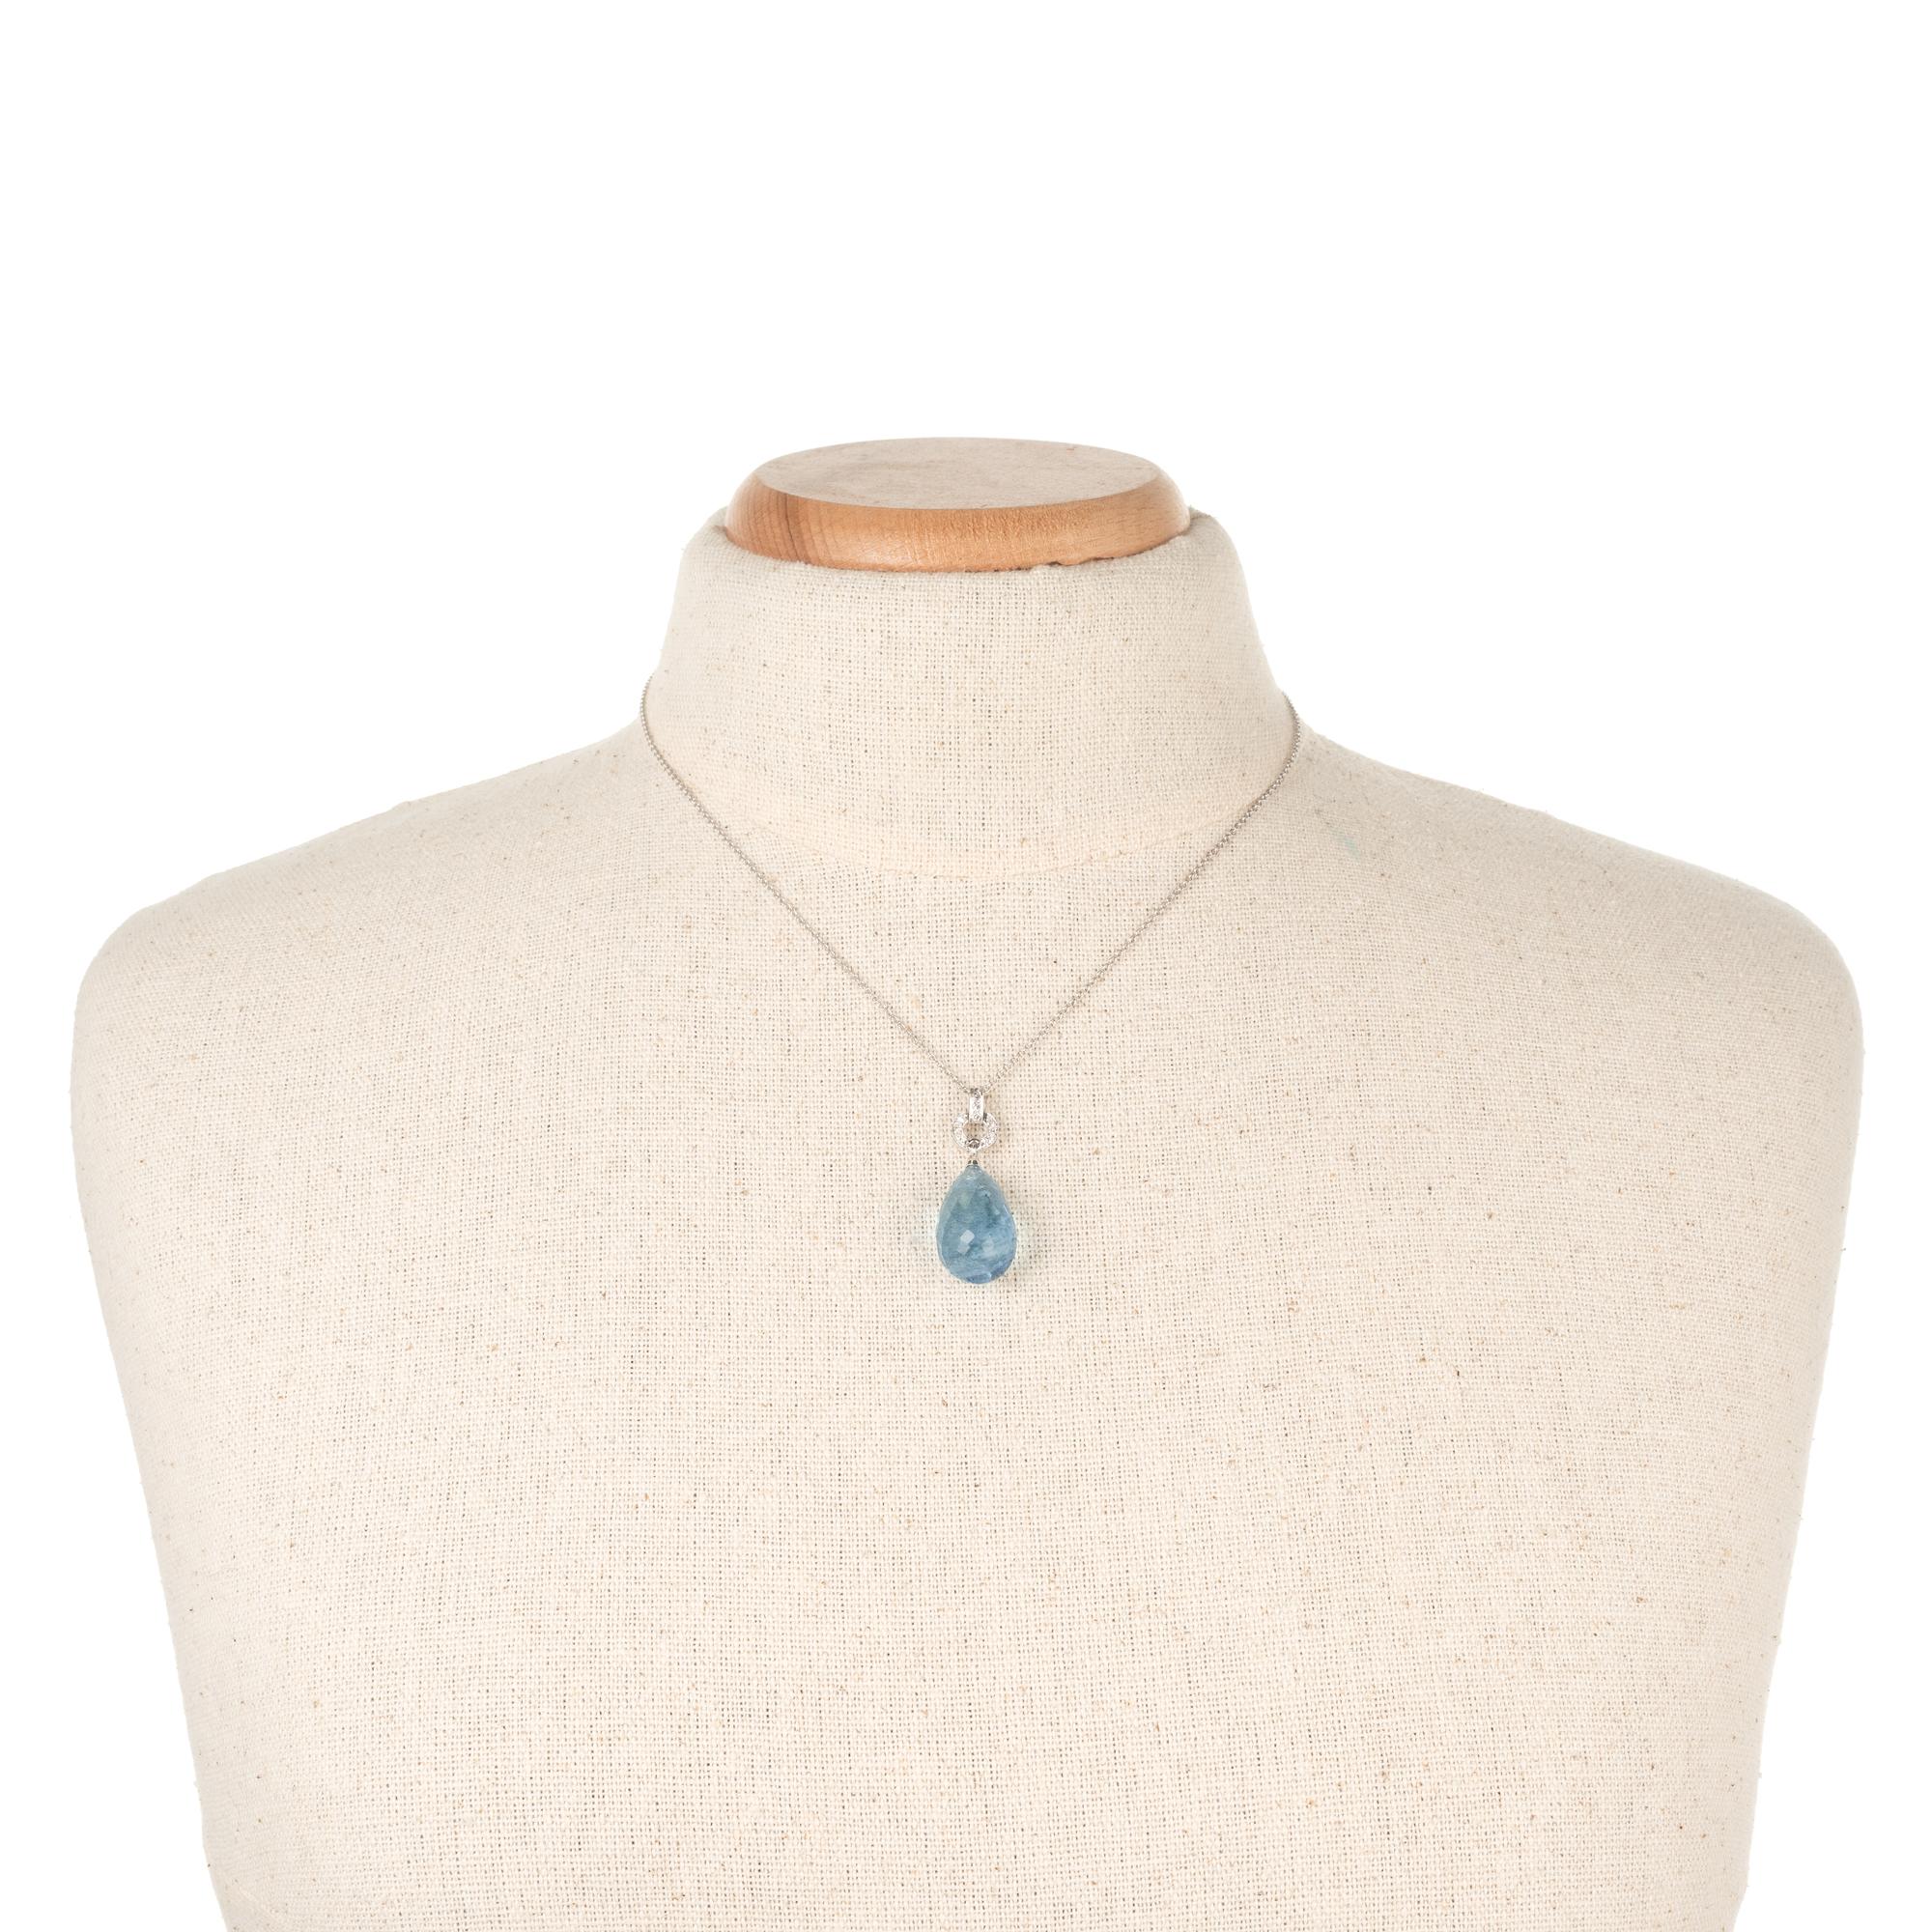 Women's 20.00 Carat Aqua Briolette Diamond Platinum Art Deco Style Pendant Necklace For Sale